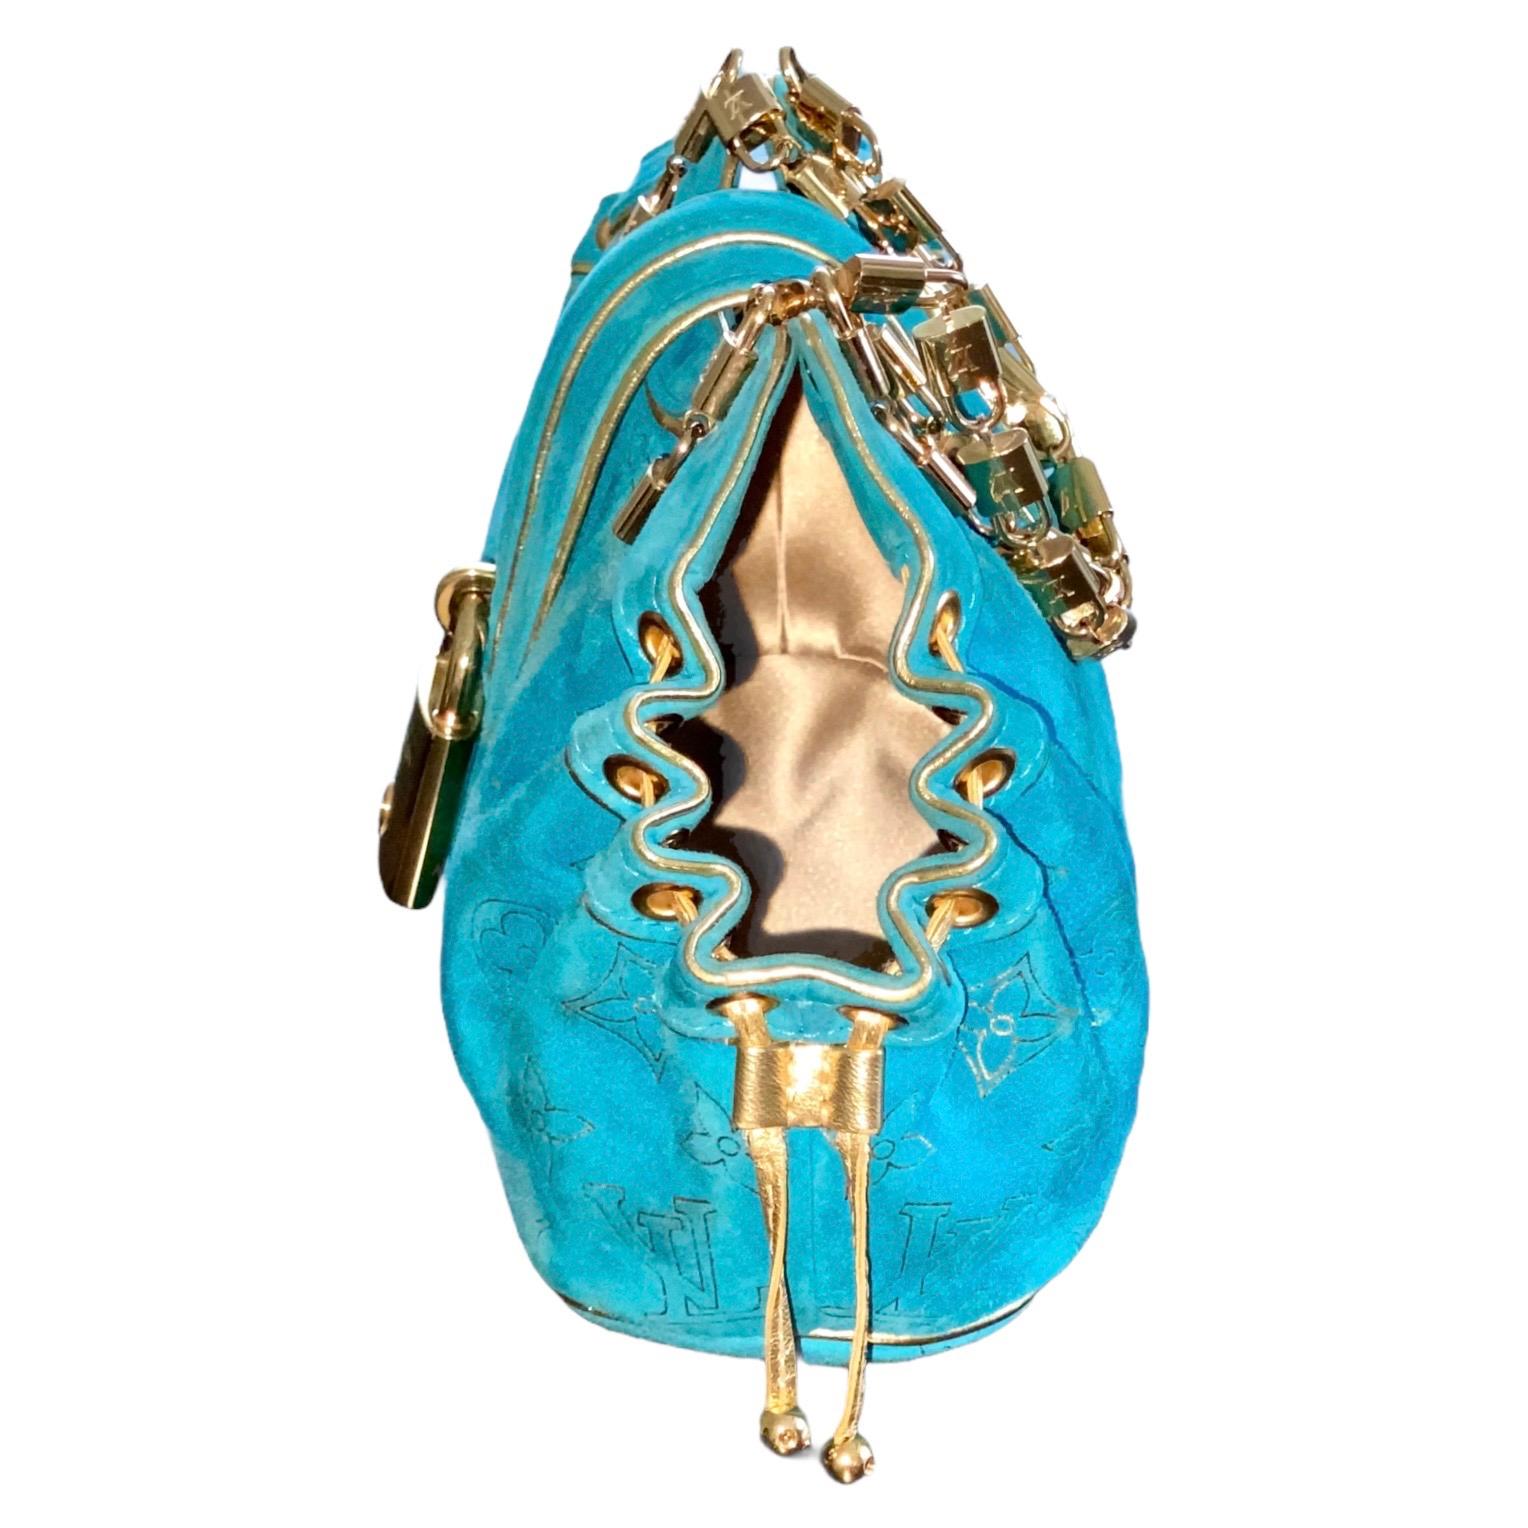 Ein atemberaubendes türkisfarbenes Wildleder von Louis Vuitton
Diese Tasche wurde in limitierter Auflage und auf Bestellung für die 150-Jahr-Feier von LV hergestellt. 
Feinstes Wildleder, bedruckt mit dem berühmten LV-Monogramm in goldener